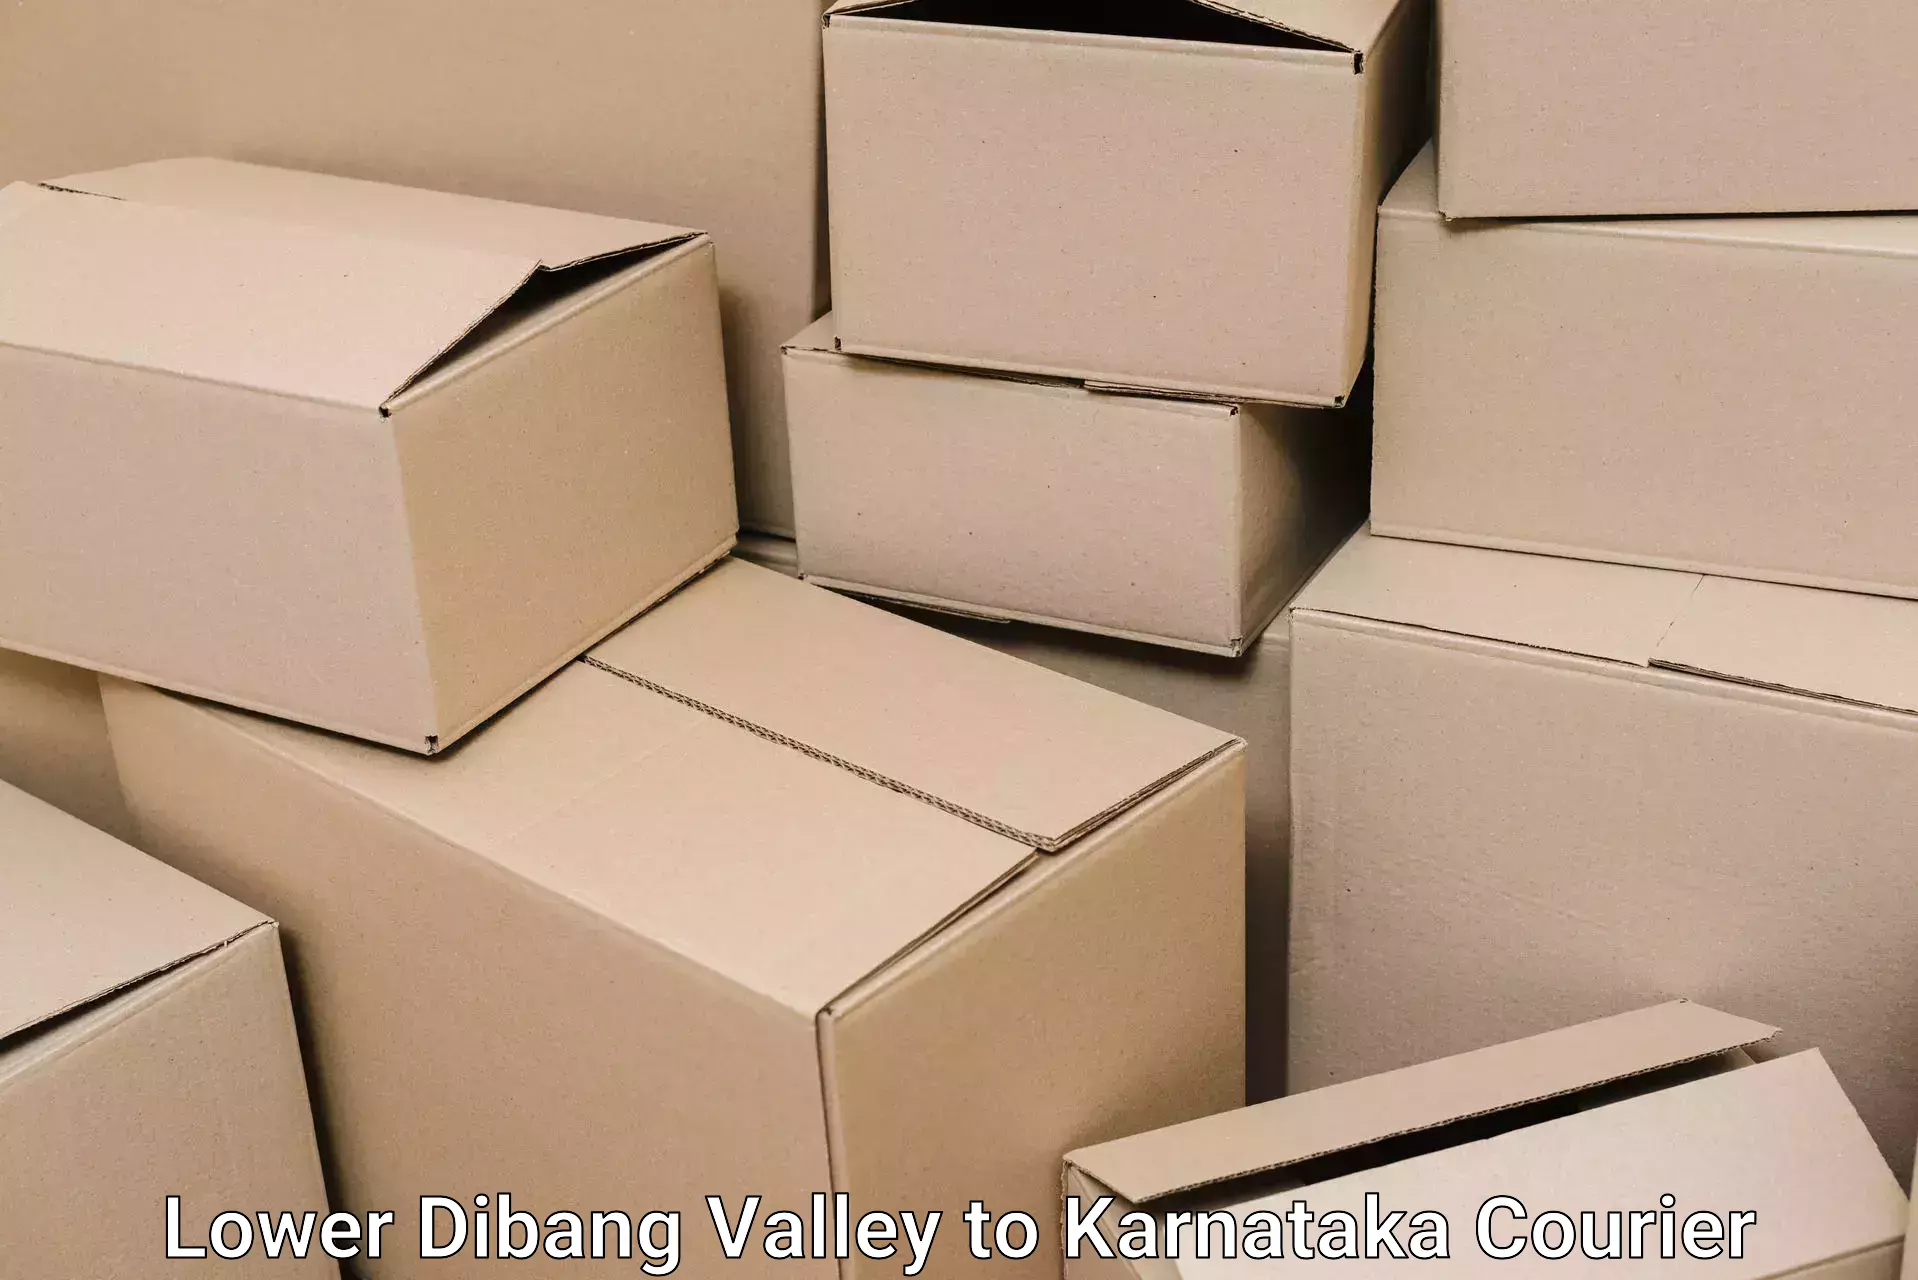 Furniture transport professionals Lower Dibang Valley to Karnataka